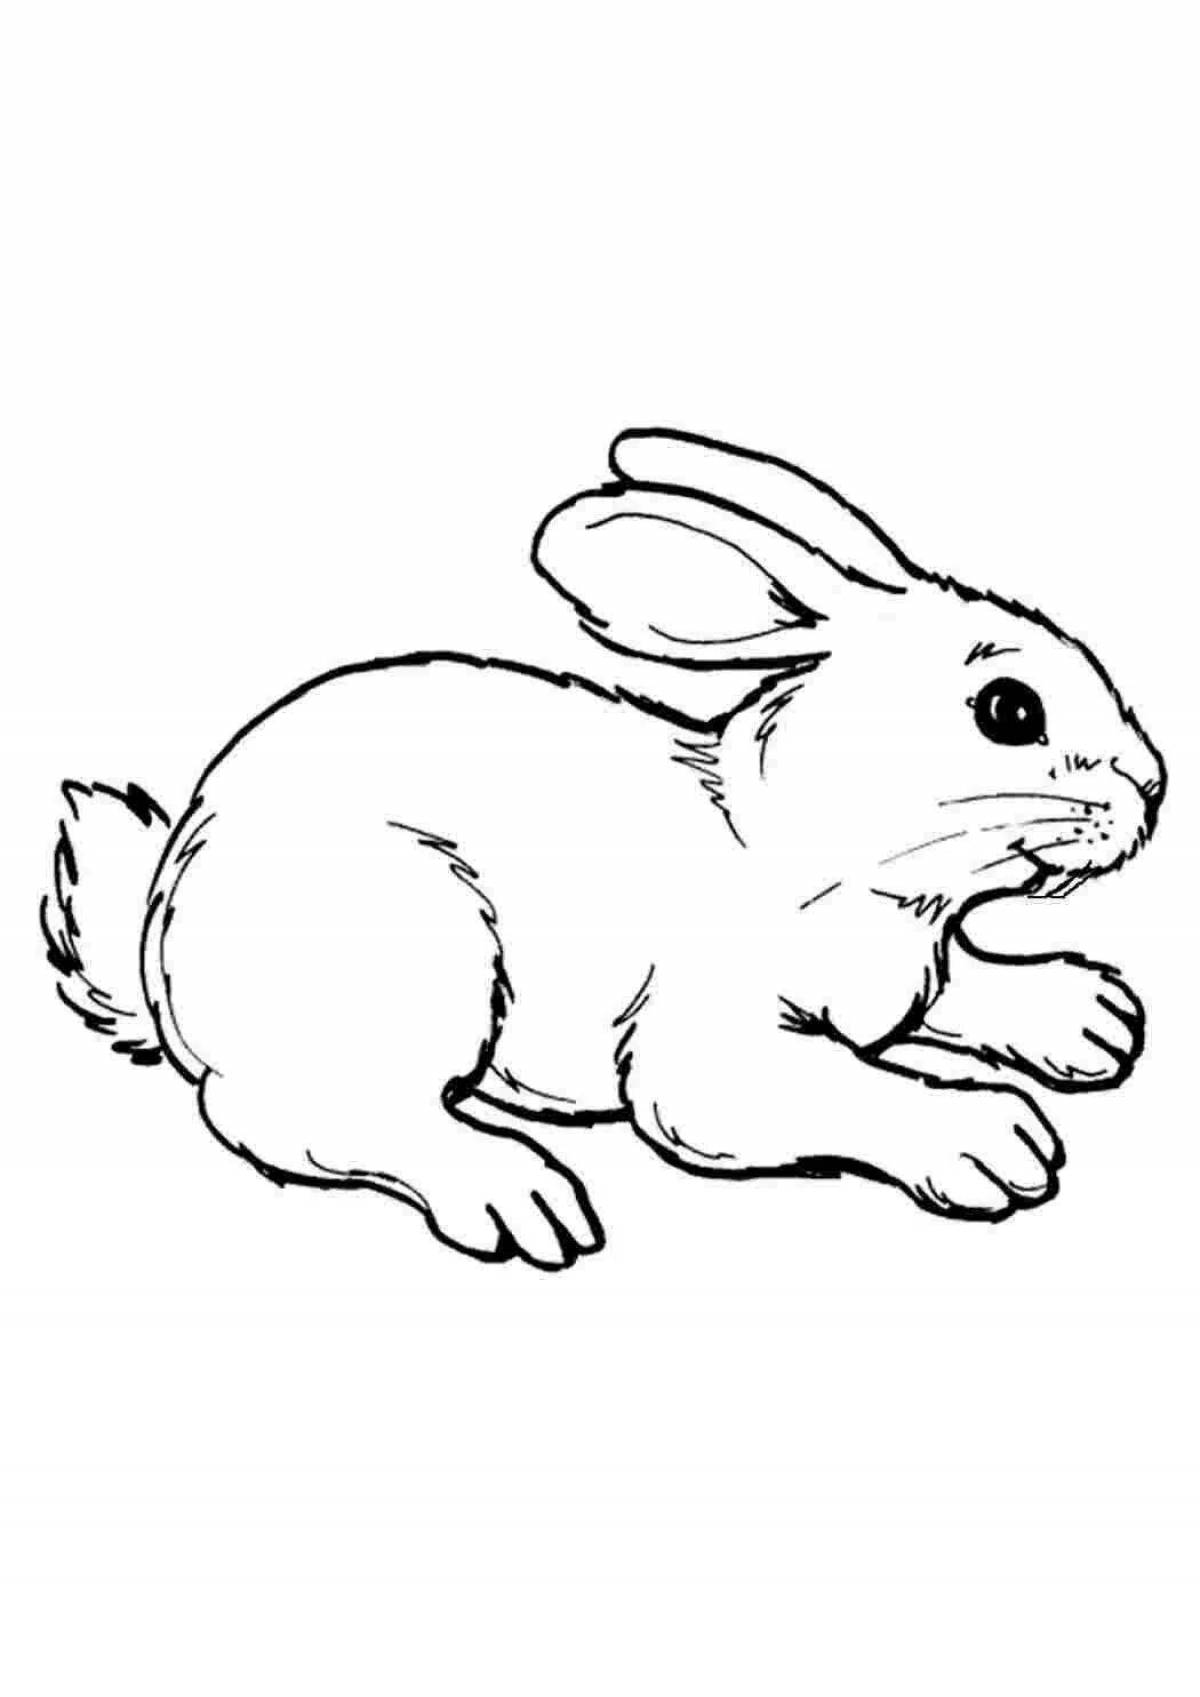 Игривый рисунок кролика для детей